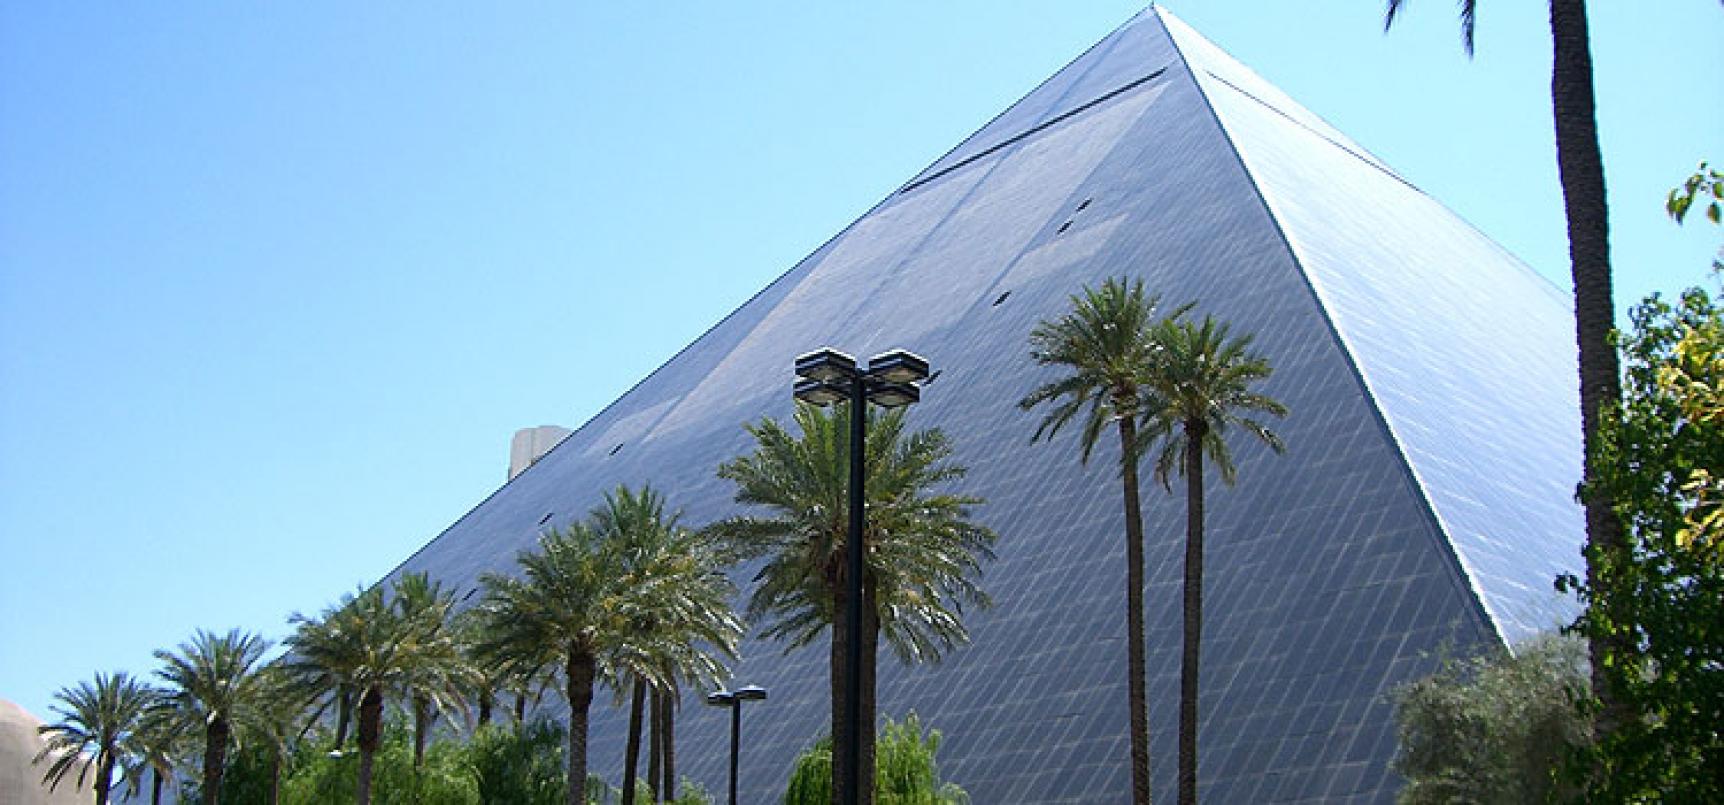 Luxor Hotel & Casino Las Vegas